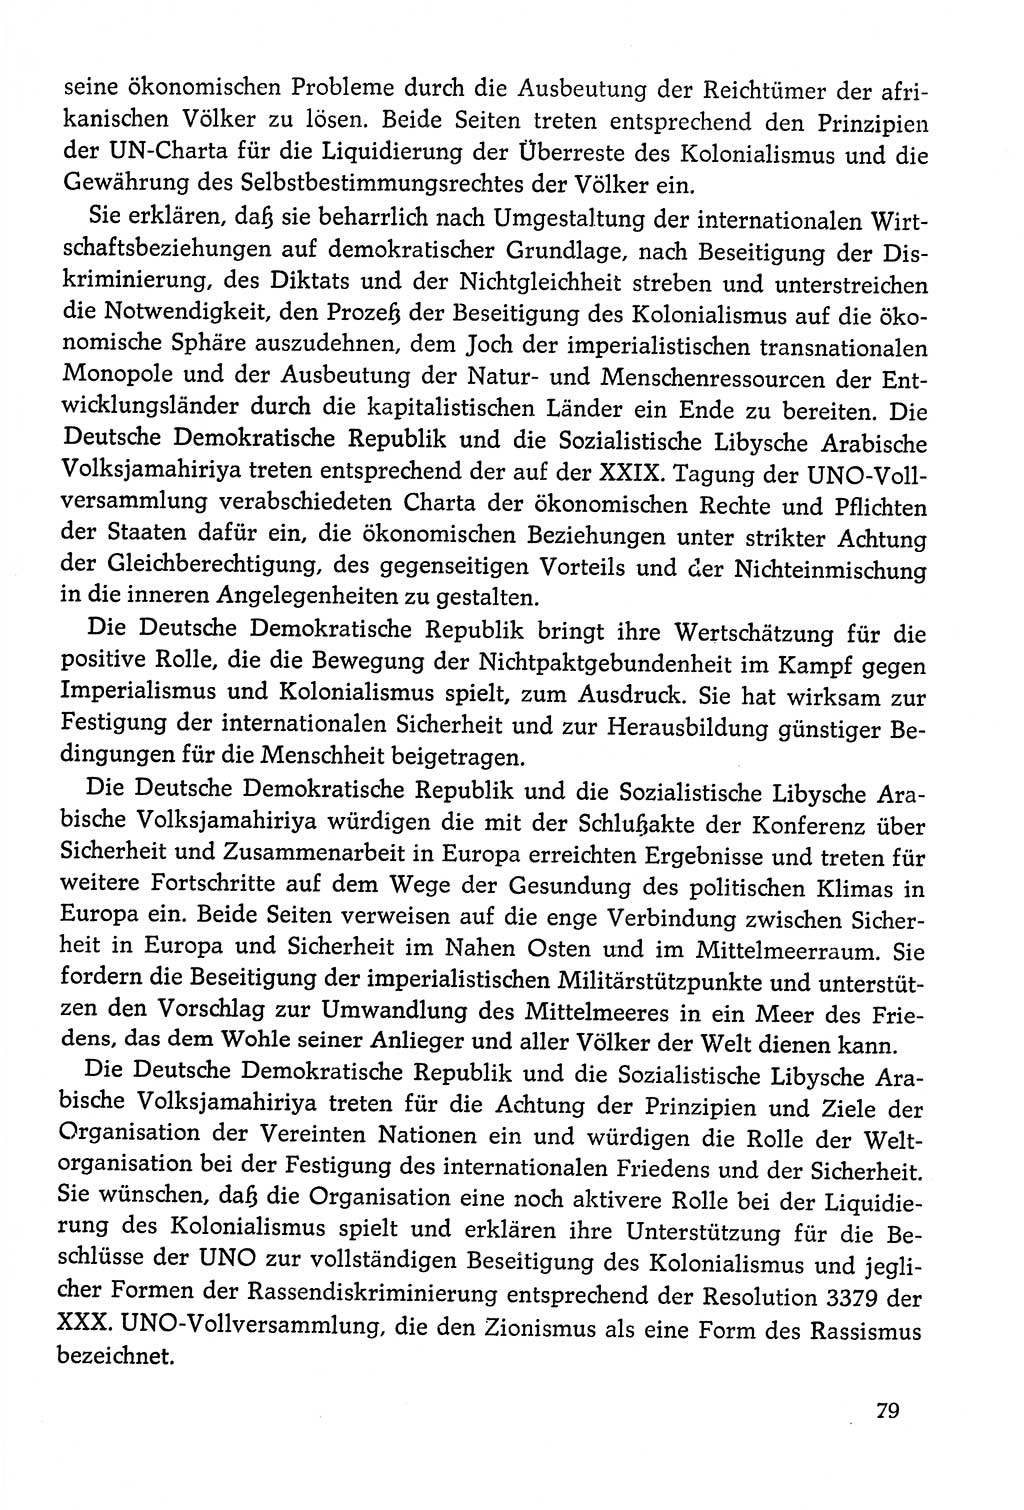 Dokumente der Sozialistischen Einheitspartei Deutschlands (SED) [Deutsche Demokratische Republik (DDR)] 1978-1979, Seite 79 (Dok. SED DDR 1978-1979, S. 79)